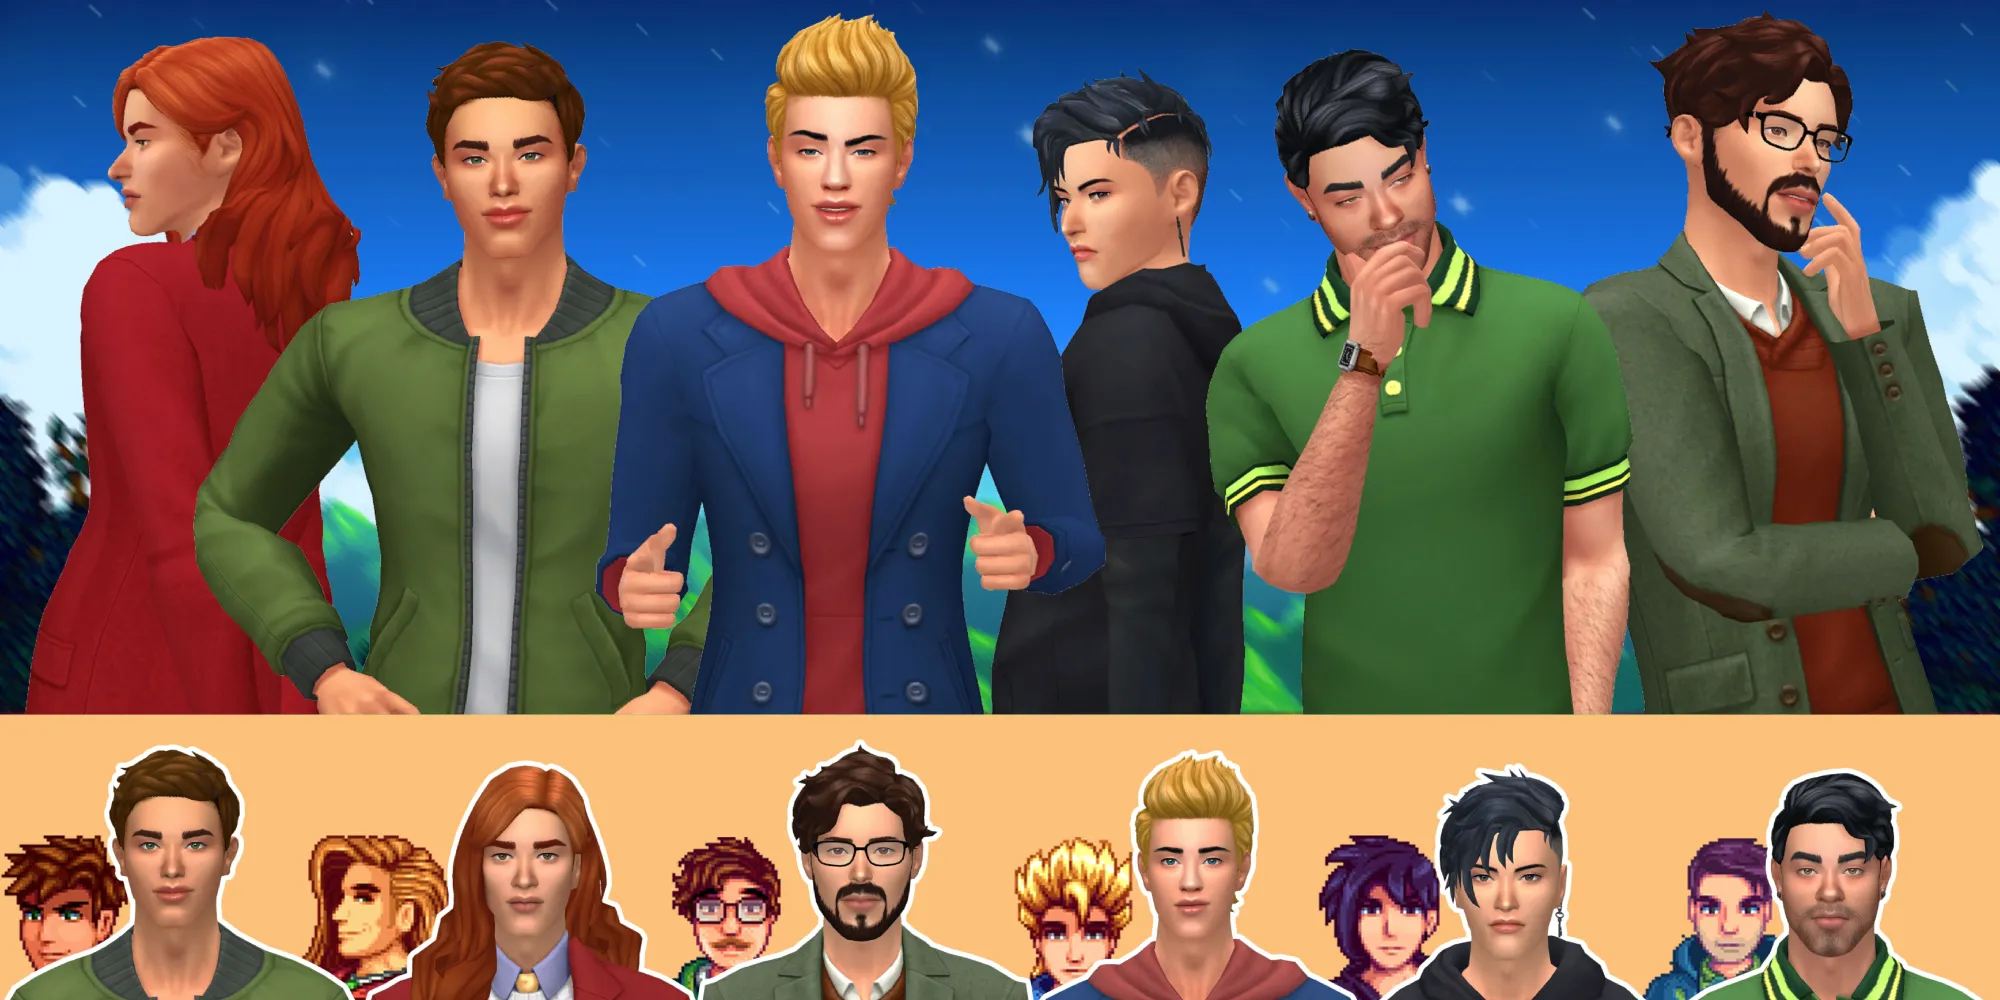 Bachelors de Stardew Valley transformés en personnages de The Sims 4